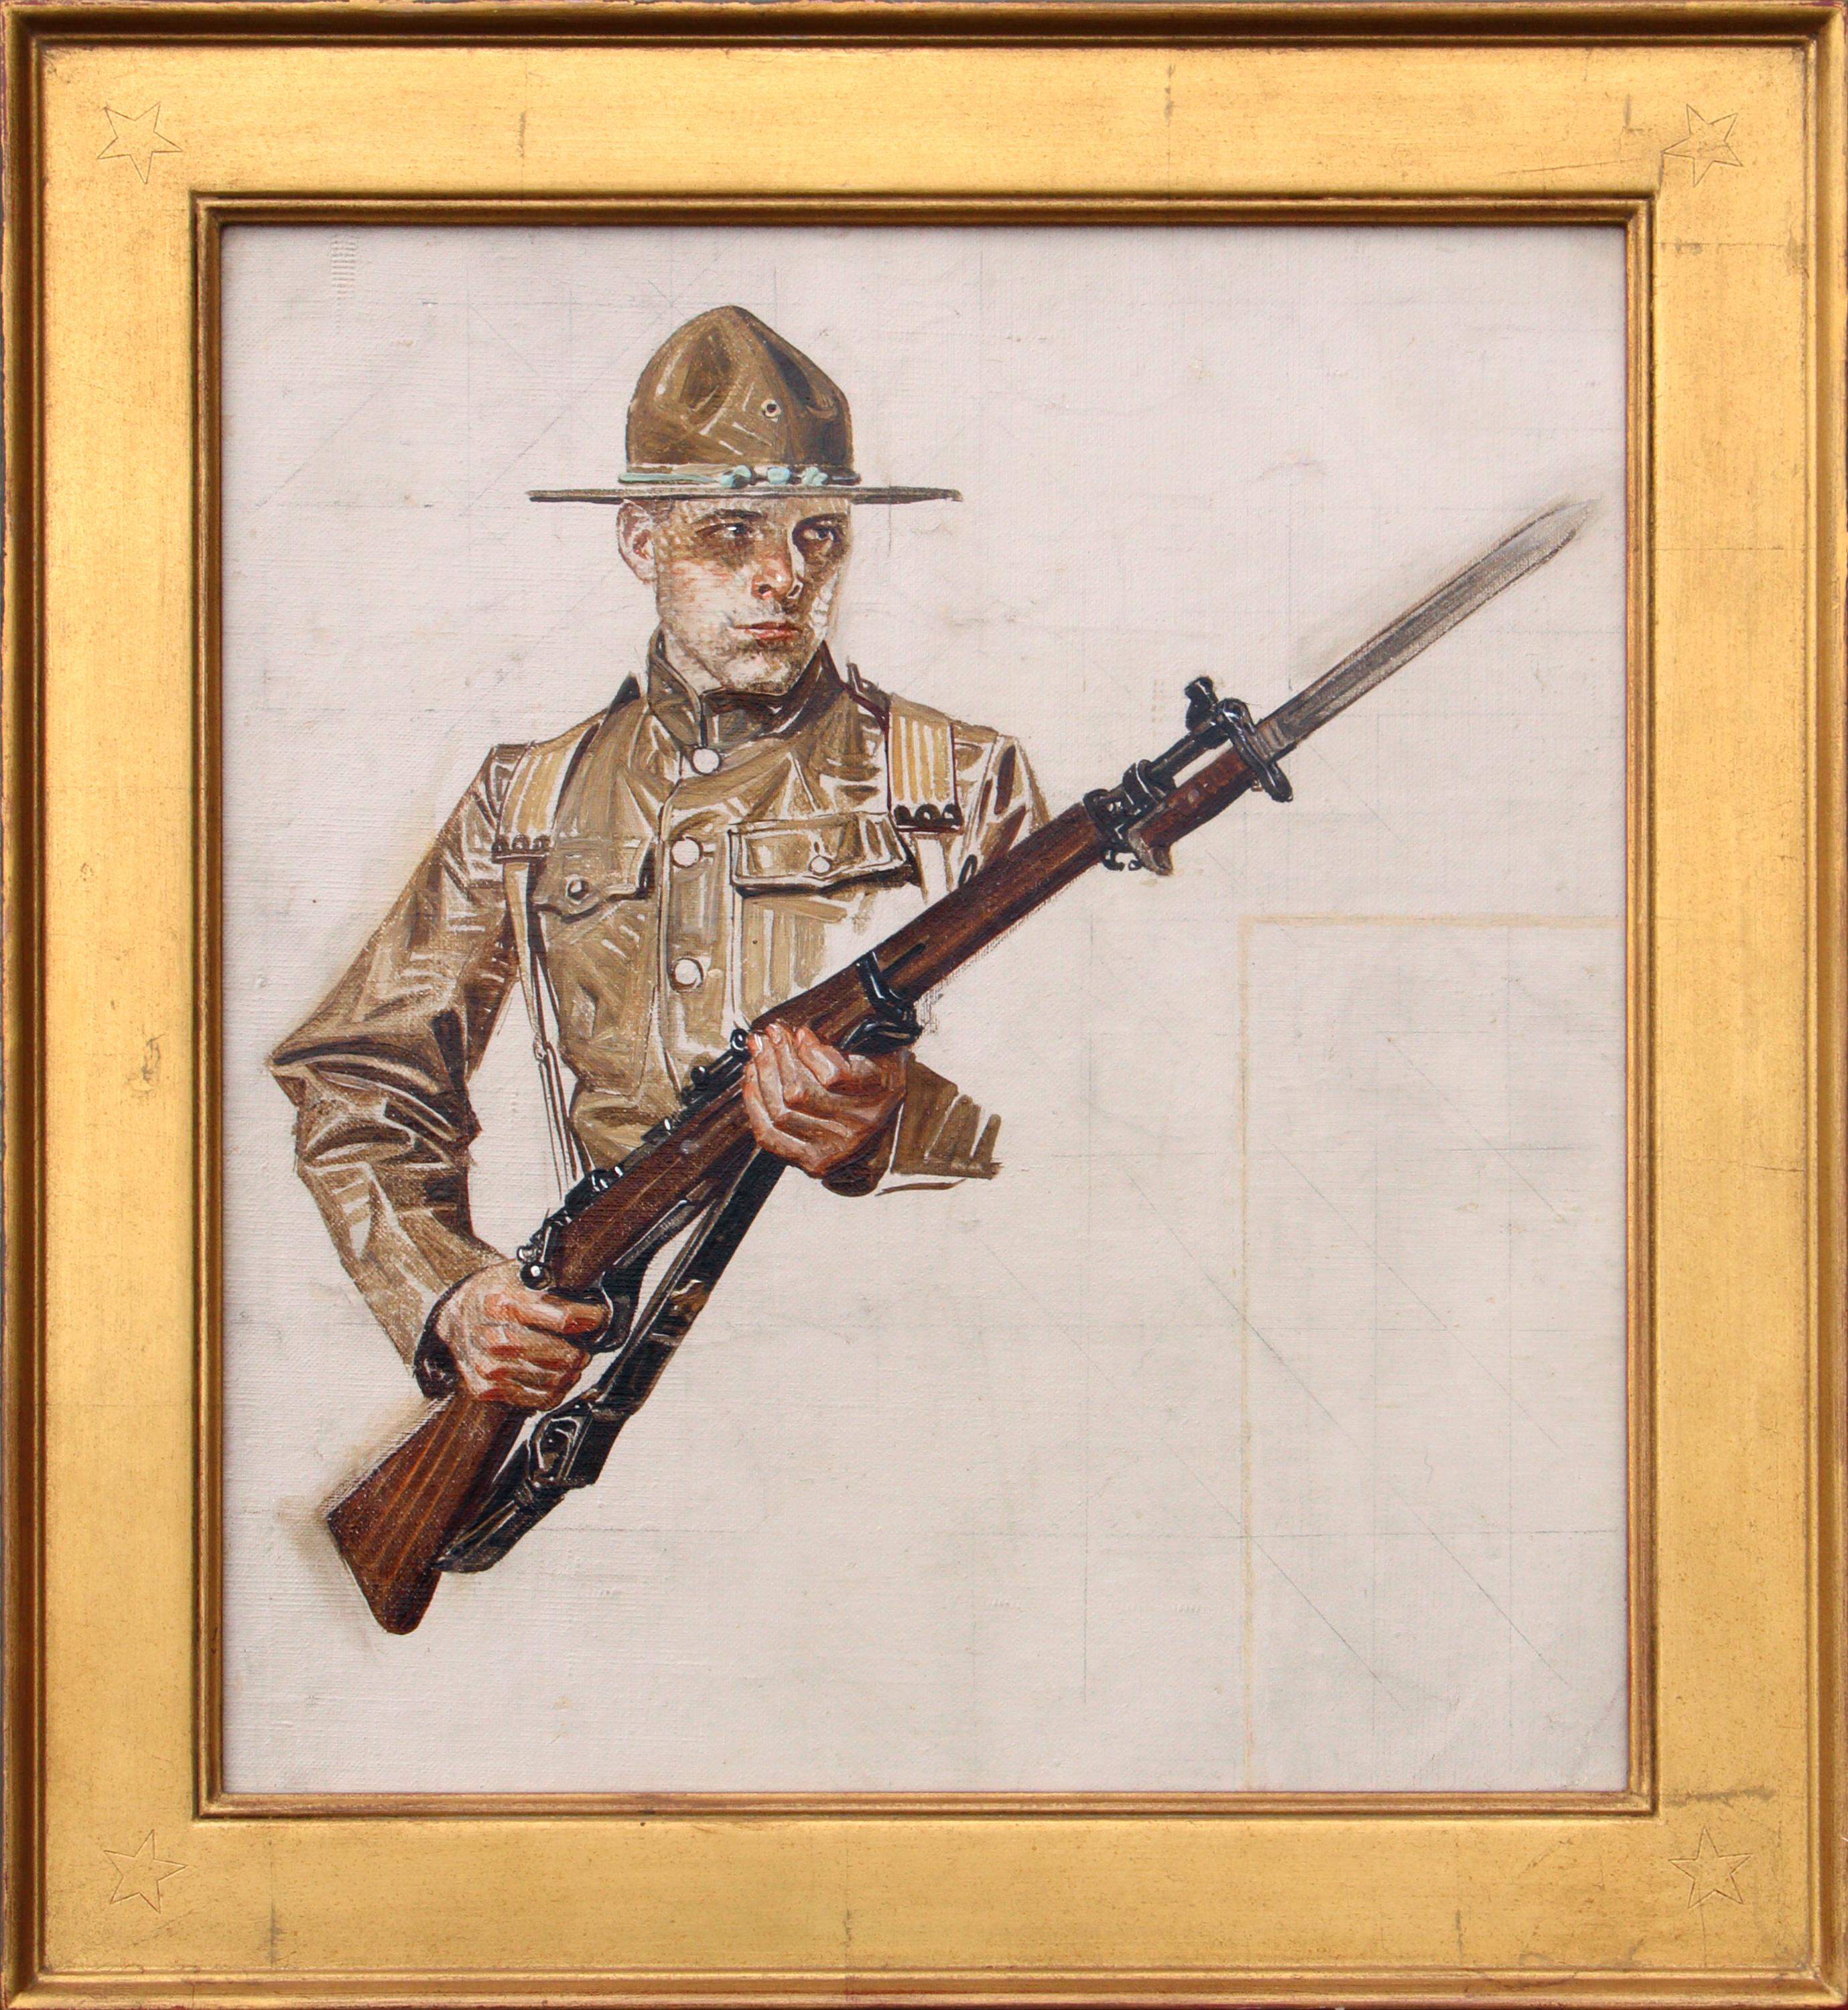 Studie über Soldier-Collier-Cover aus dem Ersten Weltkrieg – Painting von Joseph Christian Leyendecker